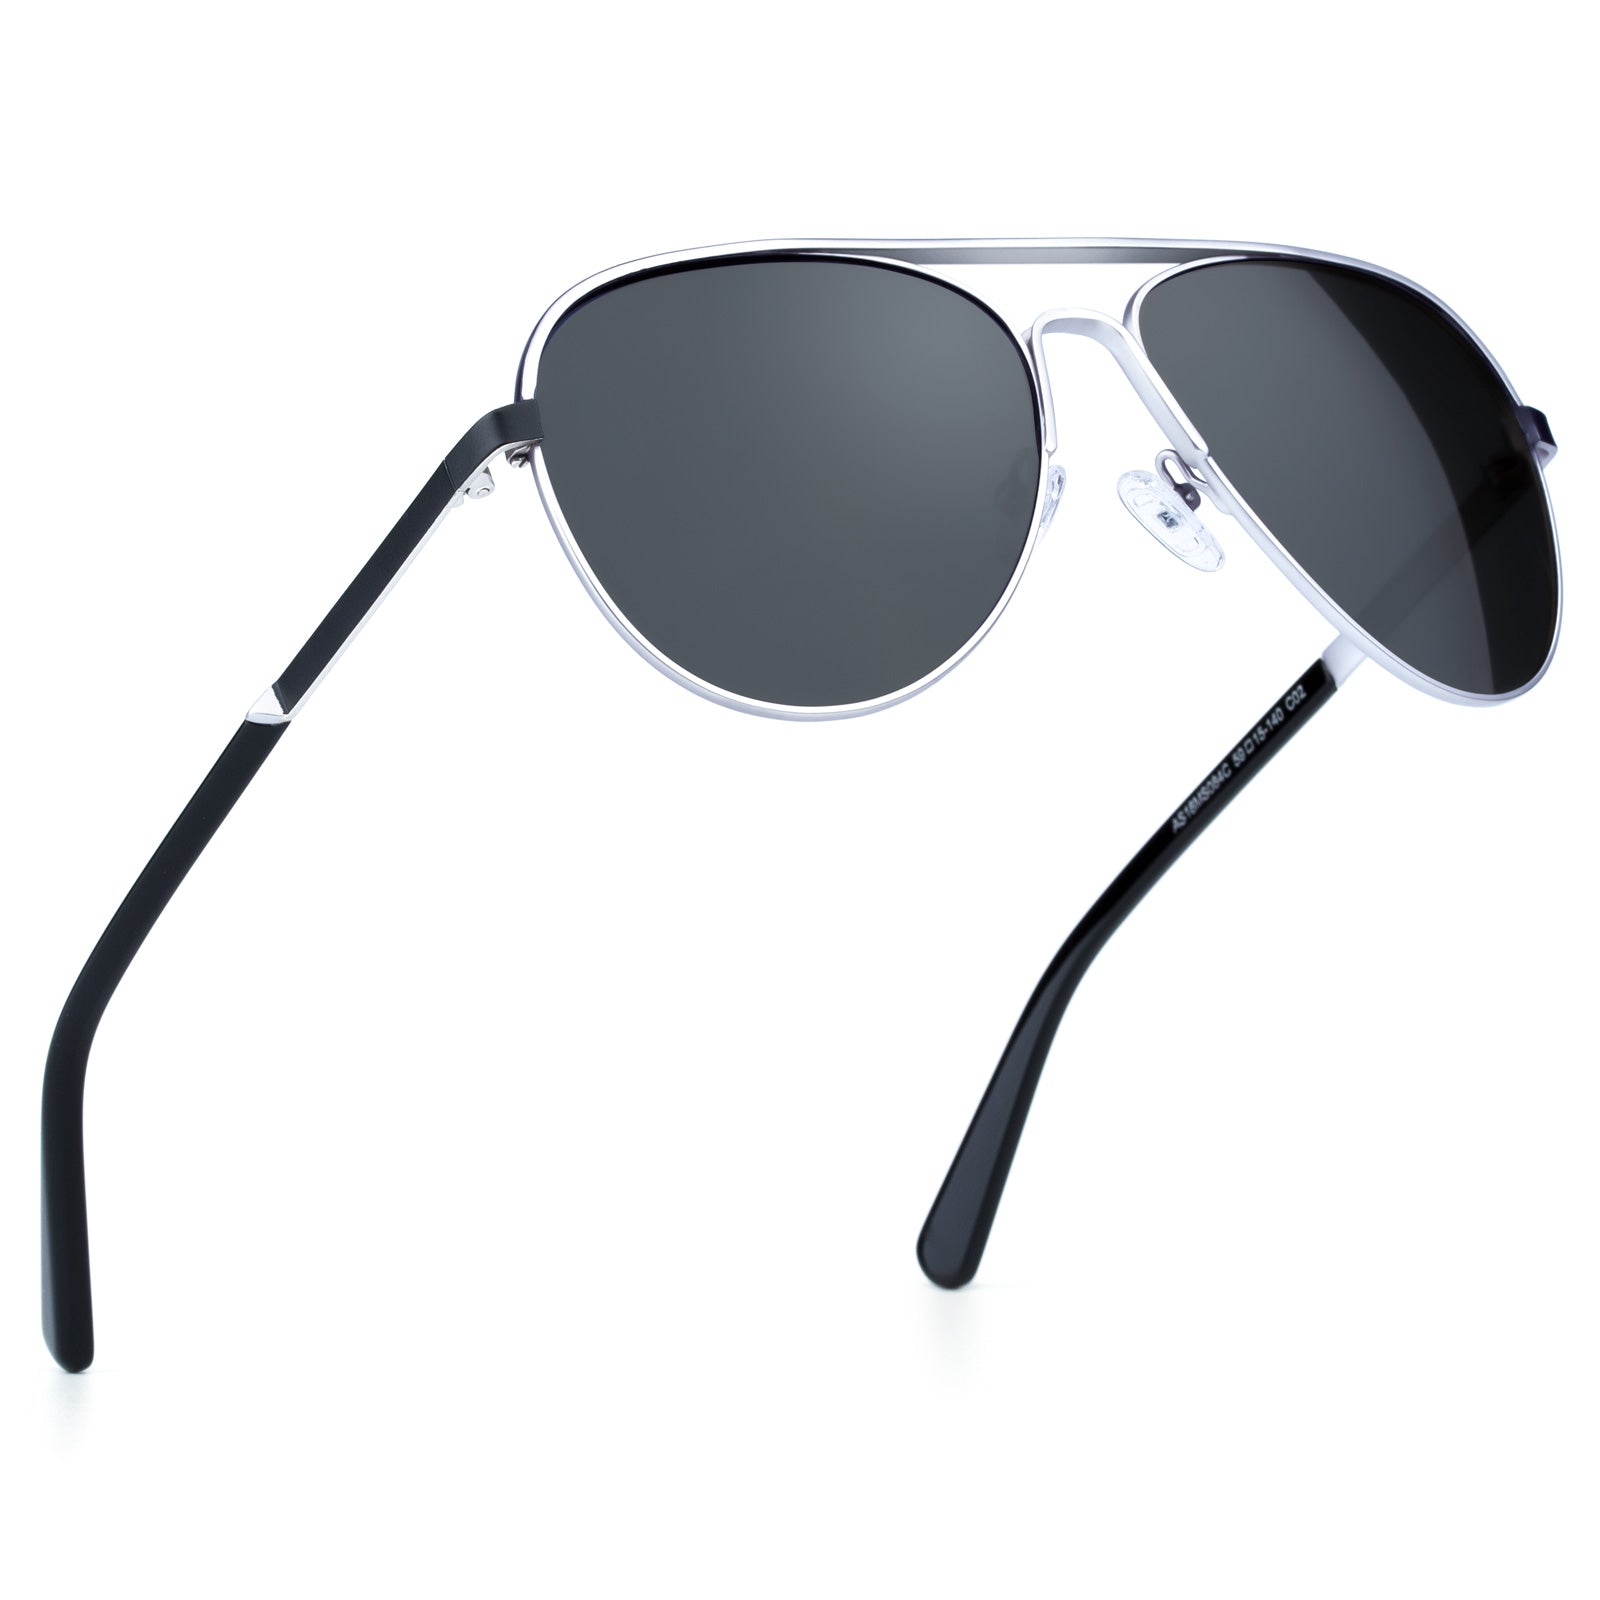 Aviator Polarized Sunglasses for Men Stainless Steel Frame with Handcr ...